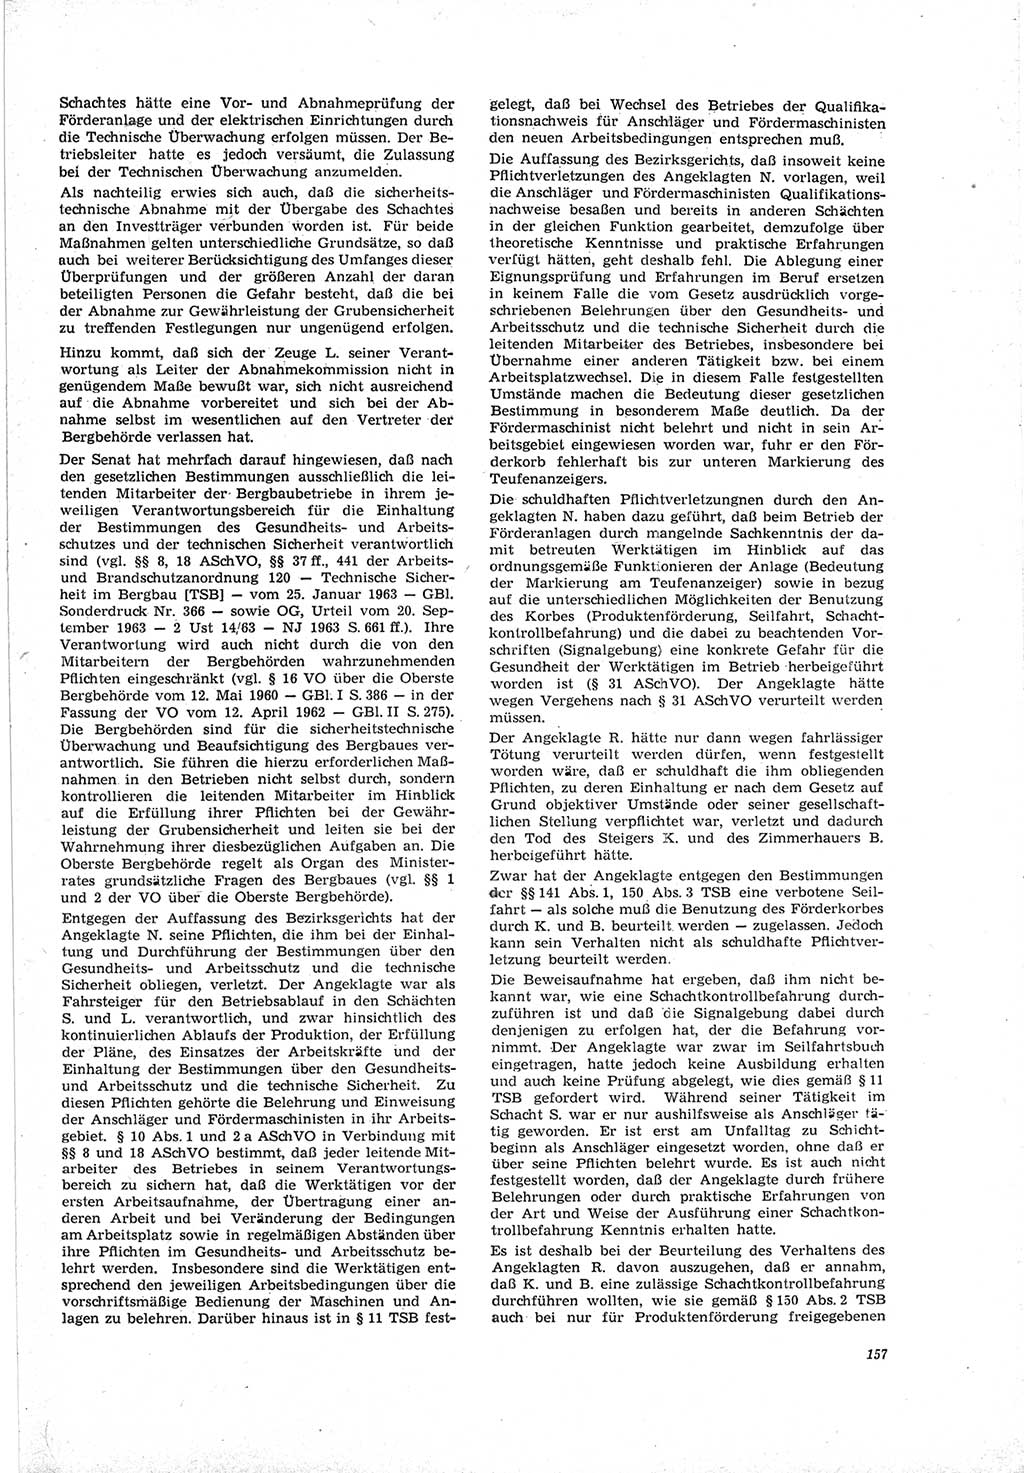 Neue Justiz (NJ), Zeitschrift für Recht und Rechtswissenschaft [Deutsche Demokratische Republik (DDR)], 19. Jahrgang 1965, Seite 157 (NJ DDR 1965, S. 157)